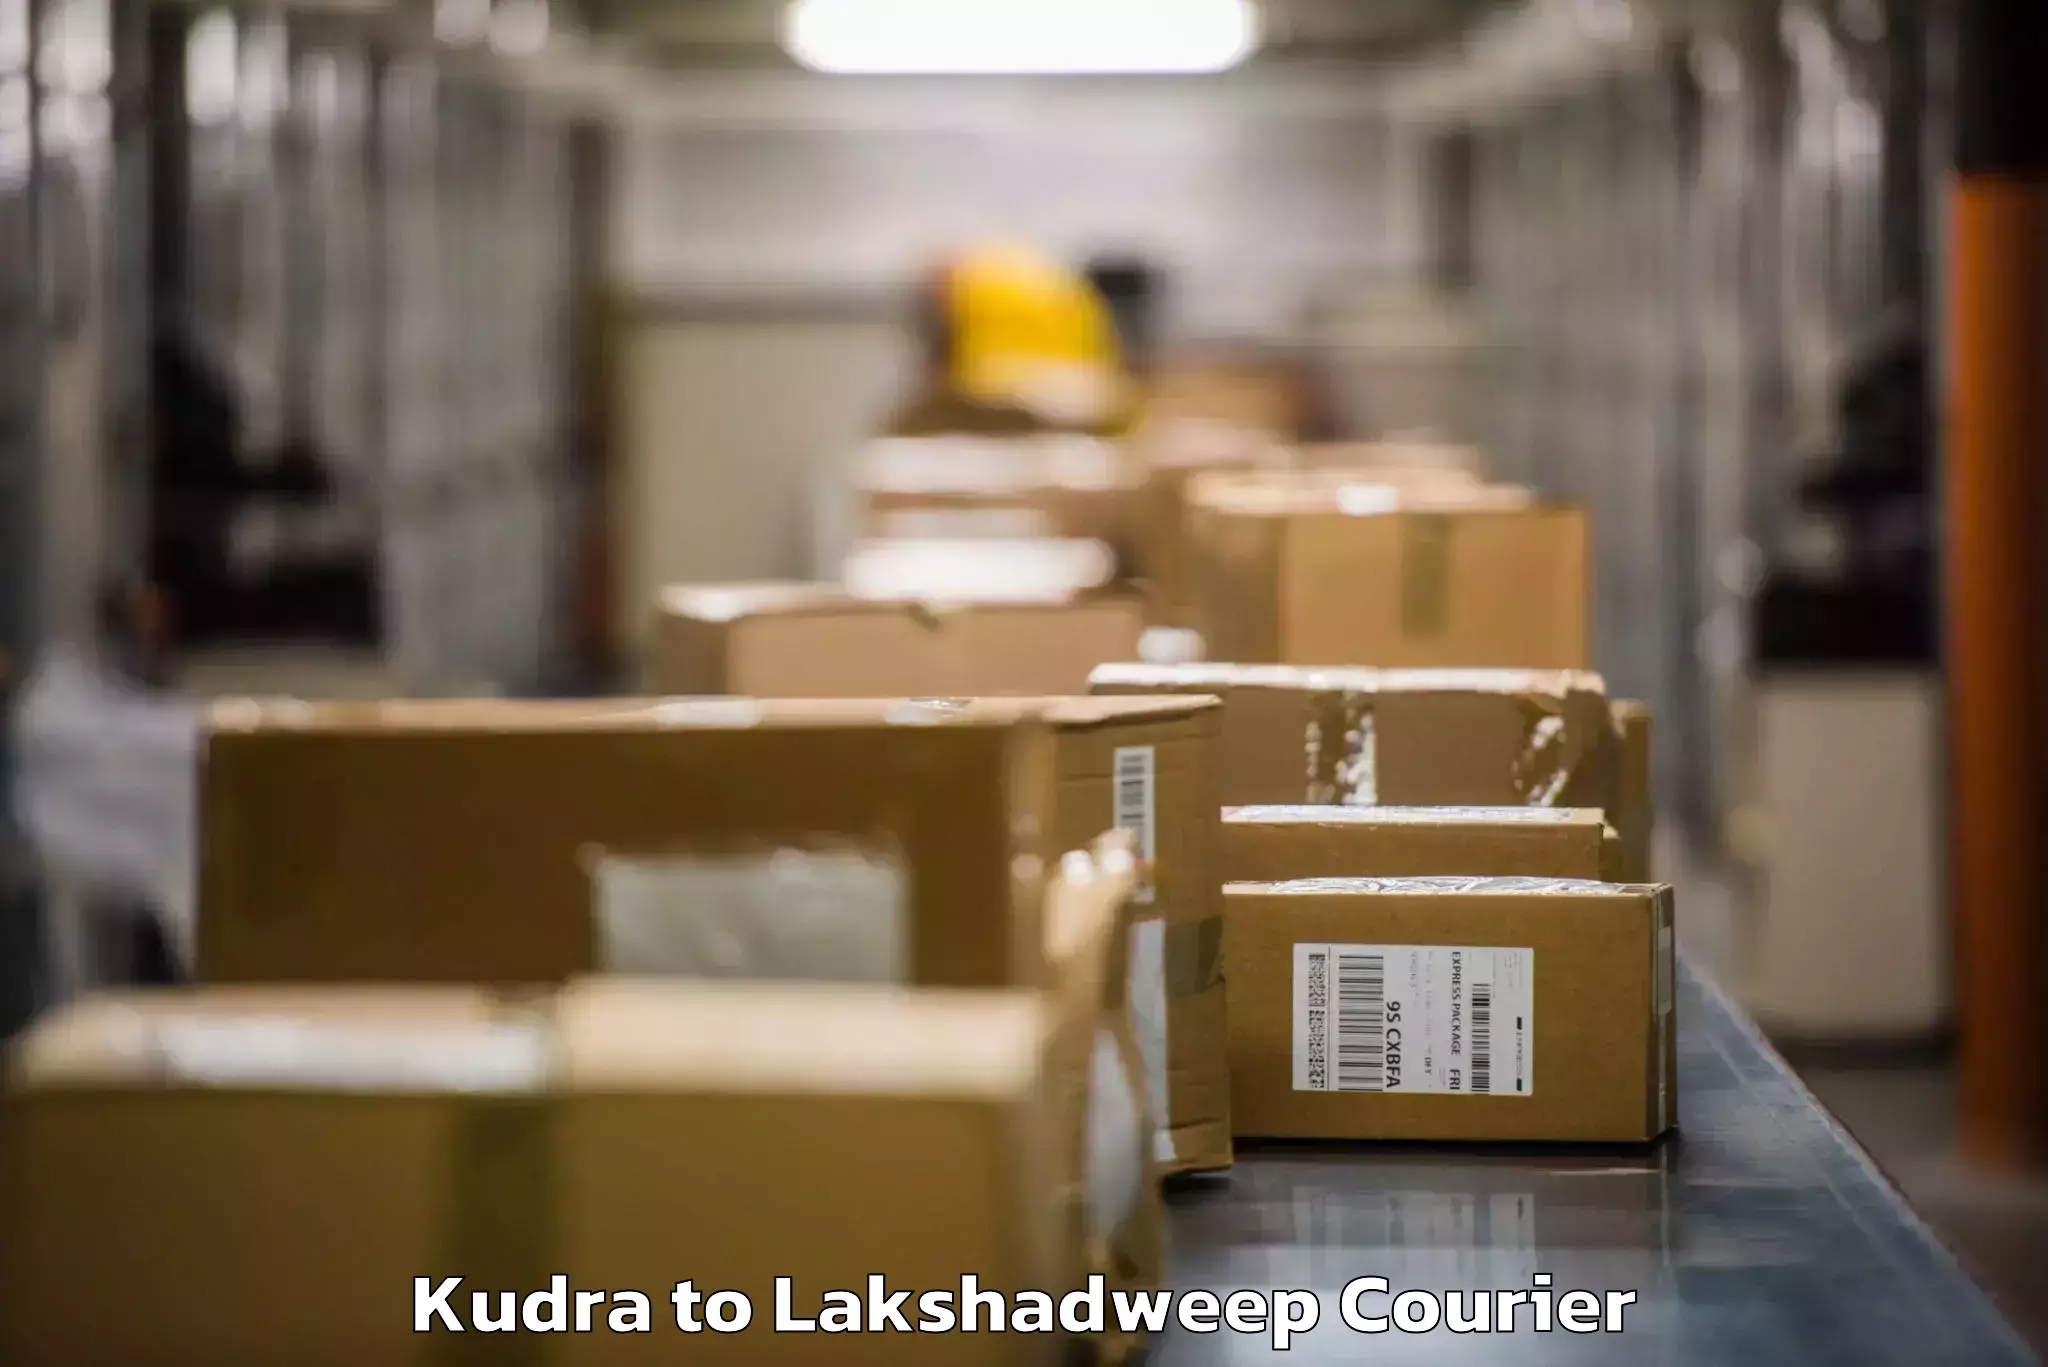 Baggage transport technology Kudra to Lakshadweep